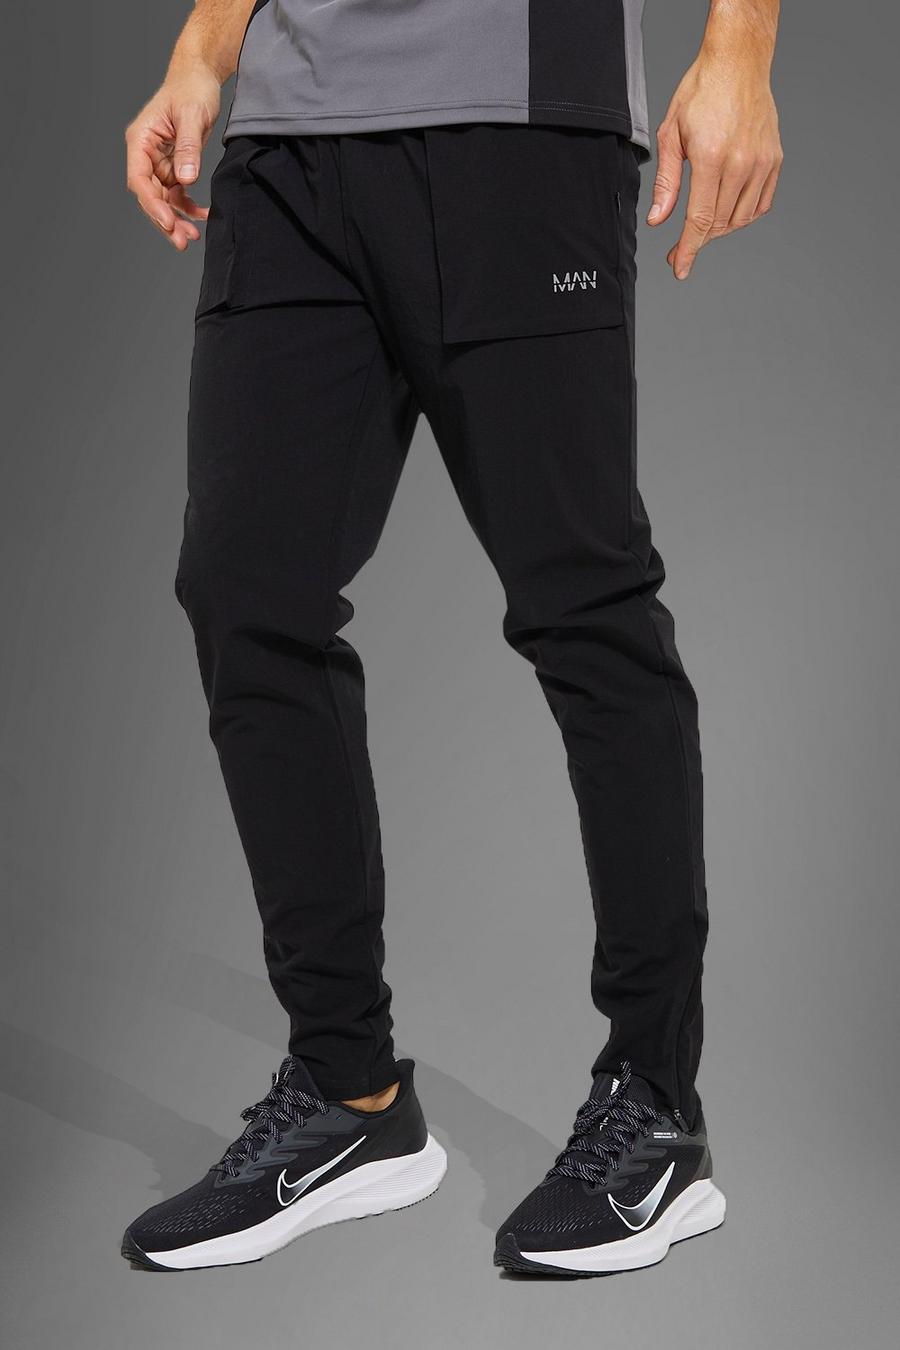 Pantaloni tuta Tall Active Gym in nylon con tasche grandi squadrate, Black negro